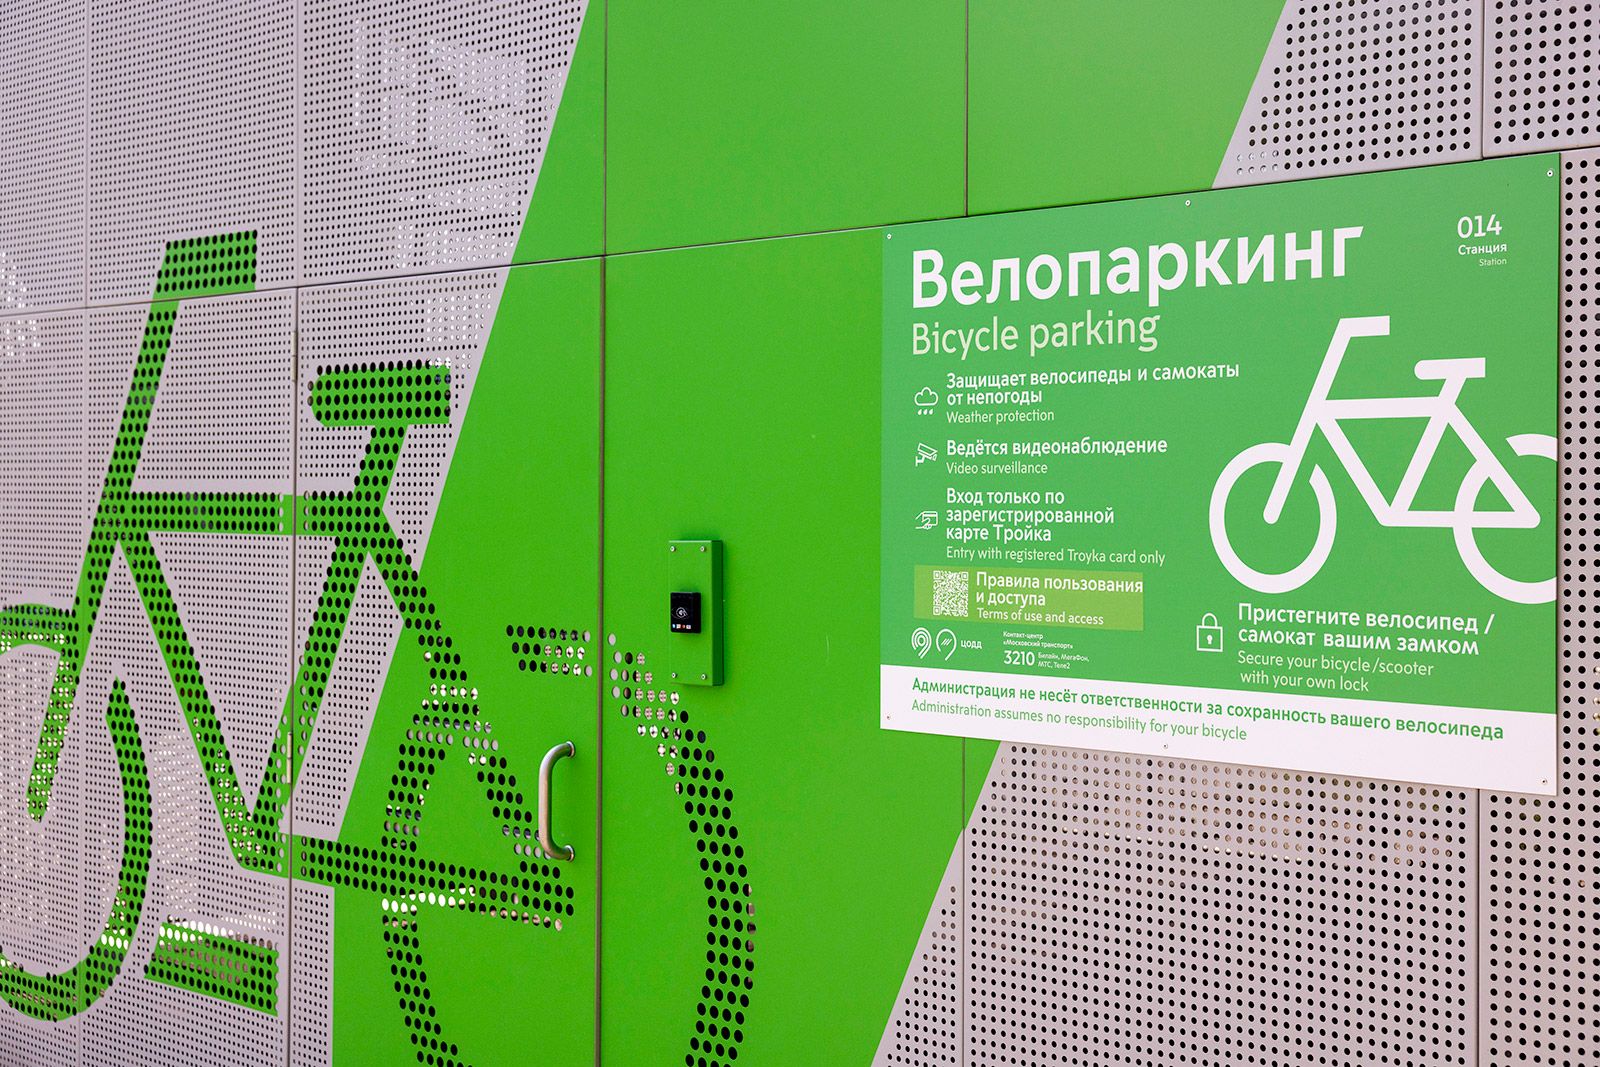 Жители Чертаново Центрального могут воспользоваться бесплатными крытыми парковками для велосипедов. Фото: сайт мэра Москвы